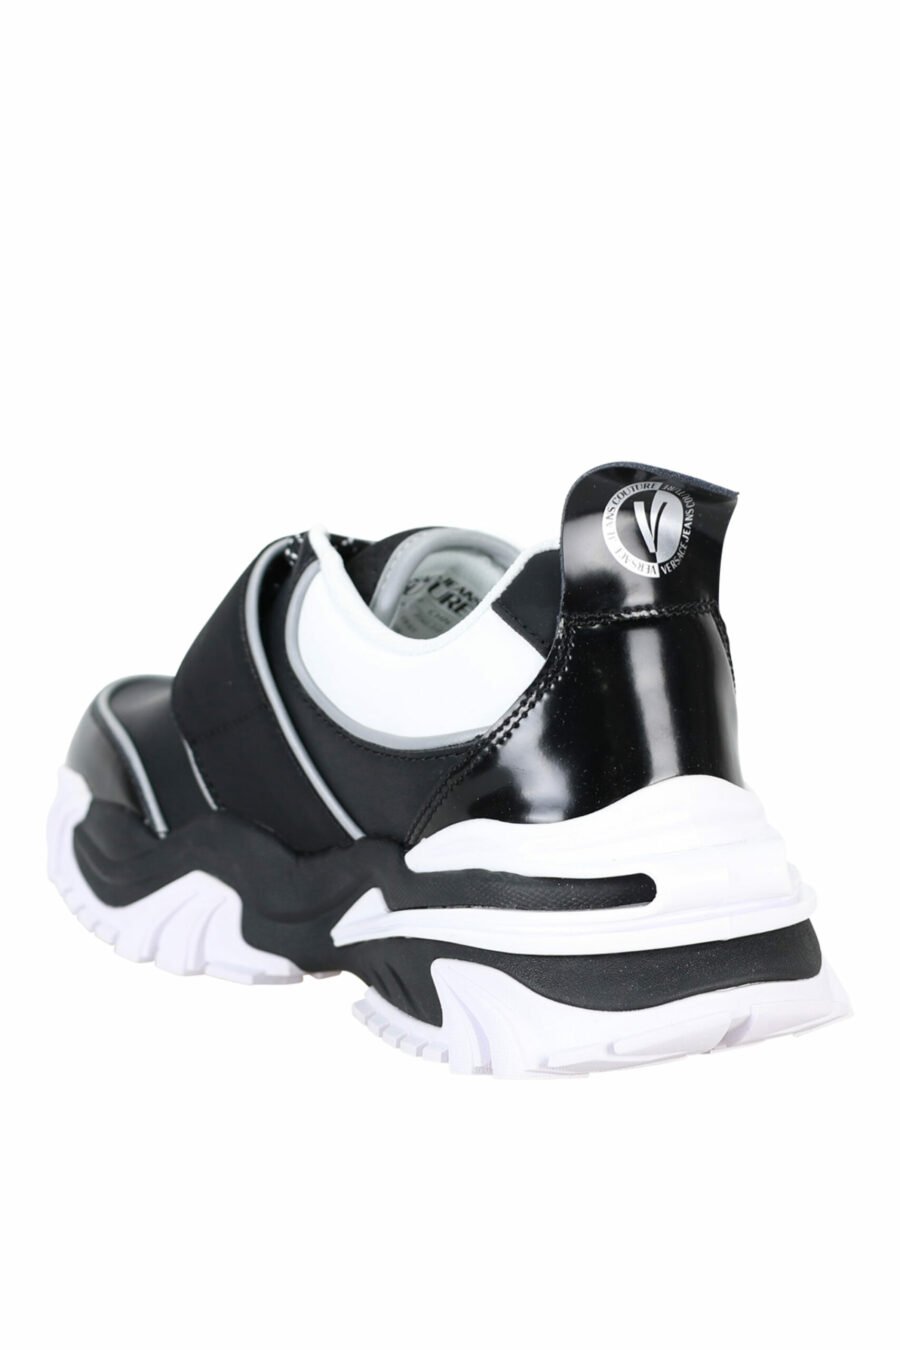 Zapatillas negras con blanco mix y logo en velcro - 808052019490008 3 scaled